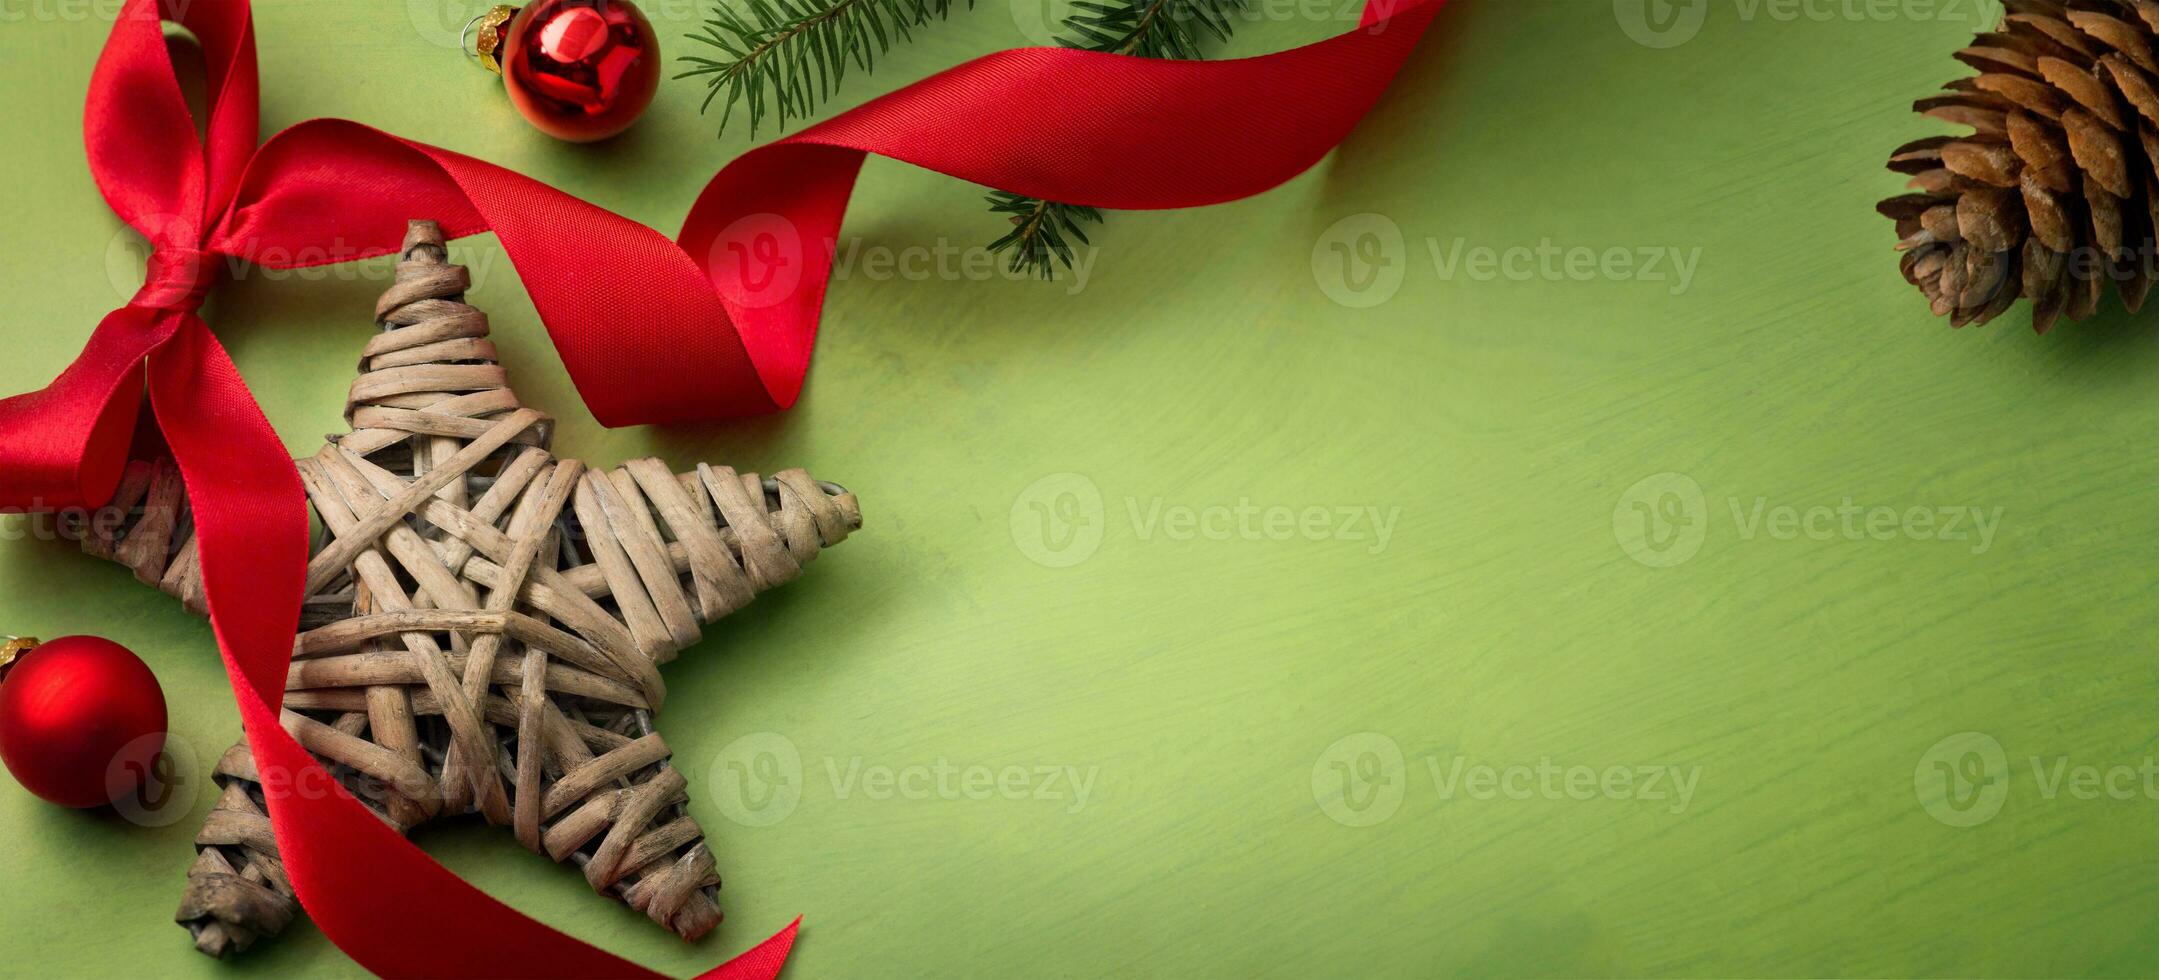 Arte Navidad y Respetuoso del medio ambiente hecho a mano regalo decoraciones eco Navidad fiesta concepto, eco decoración bandera foto